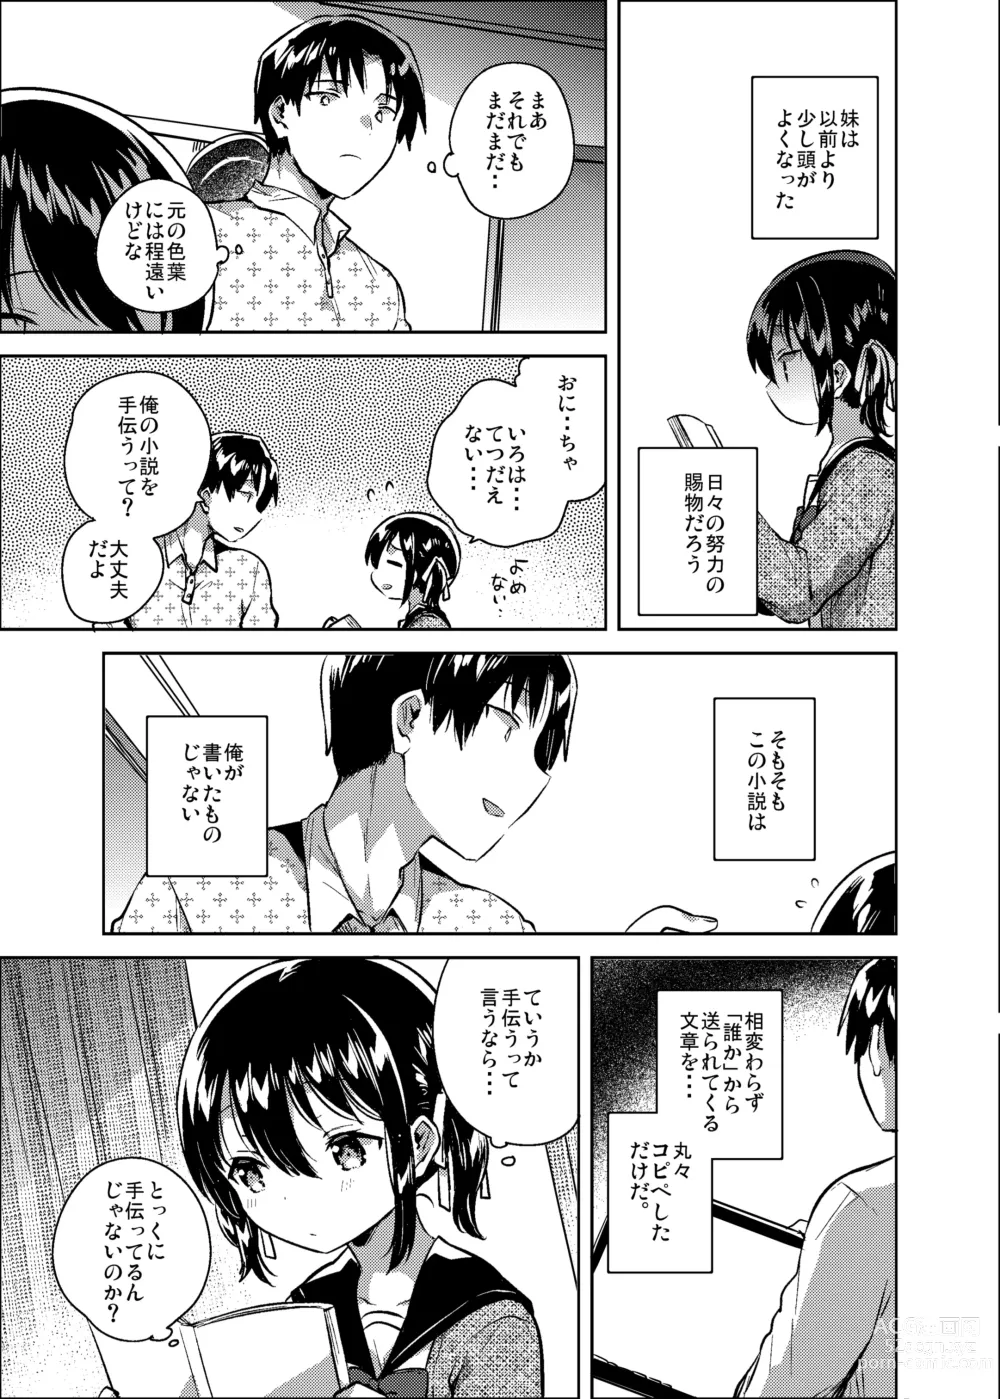 Page 6 of doujinshi Imouto wa Kanji ga Yomenai